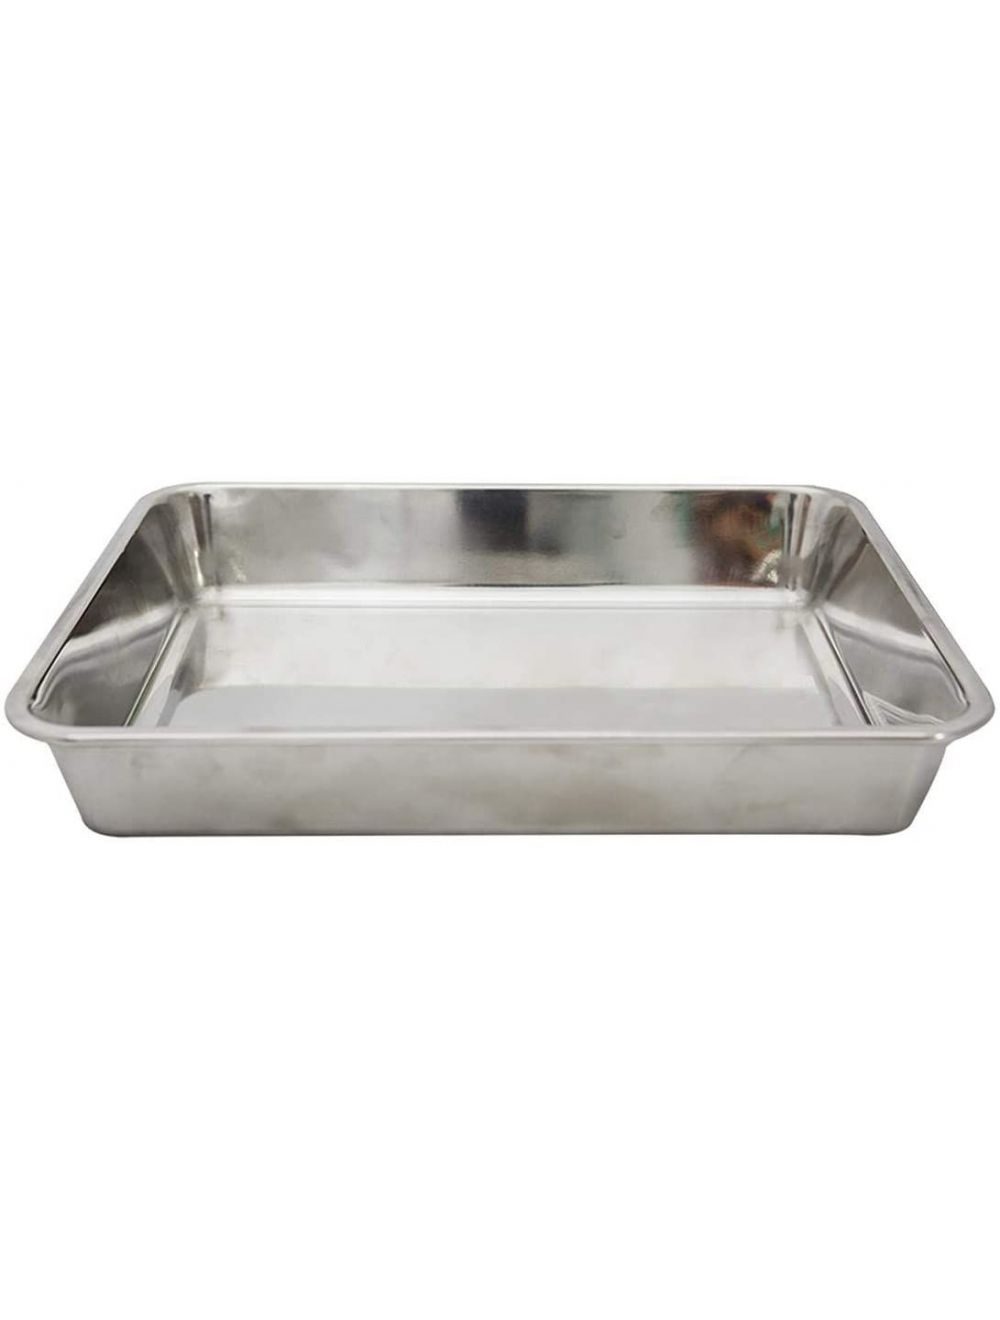 Raj Deep Baking Tray Silver-HKDT0M Silver